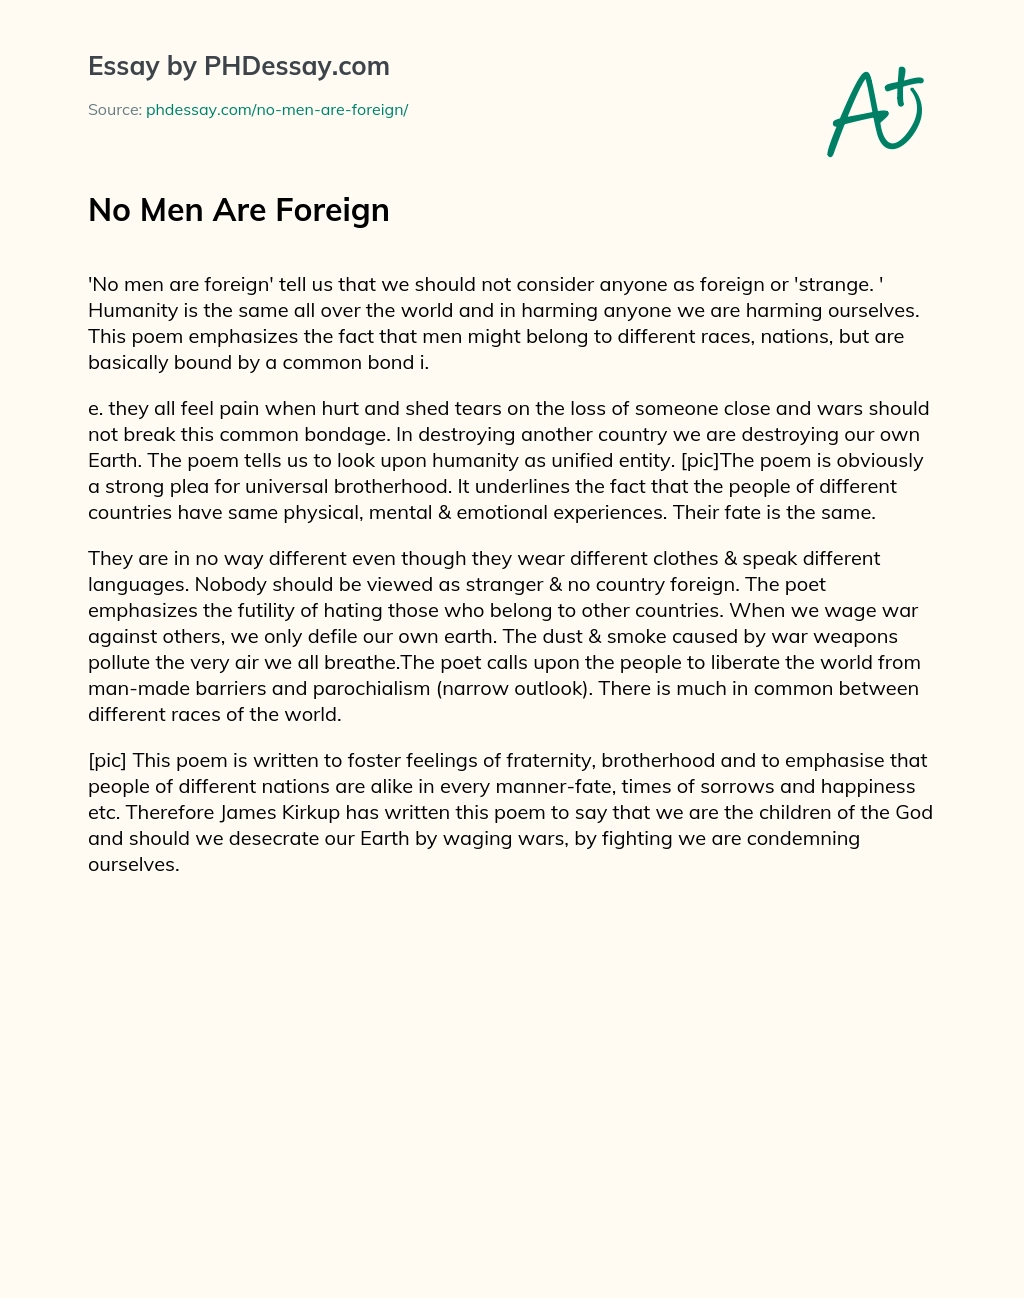 No Men Are Foreign essay